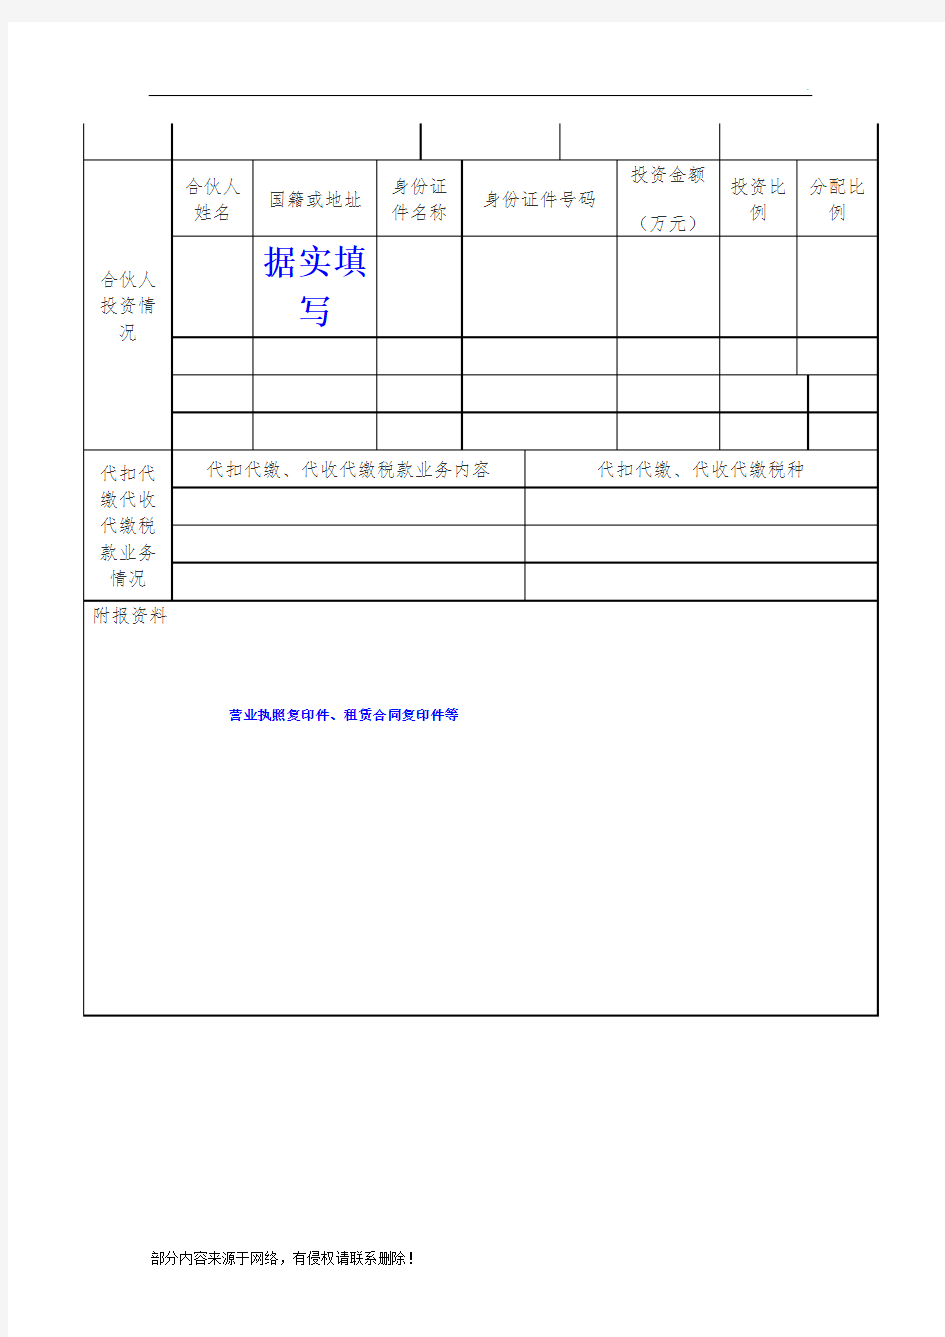 税务登记表(范本)